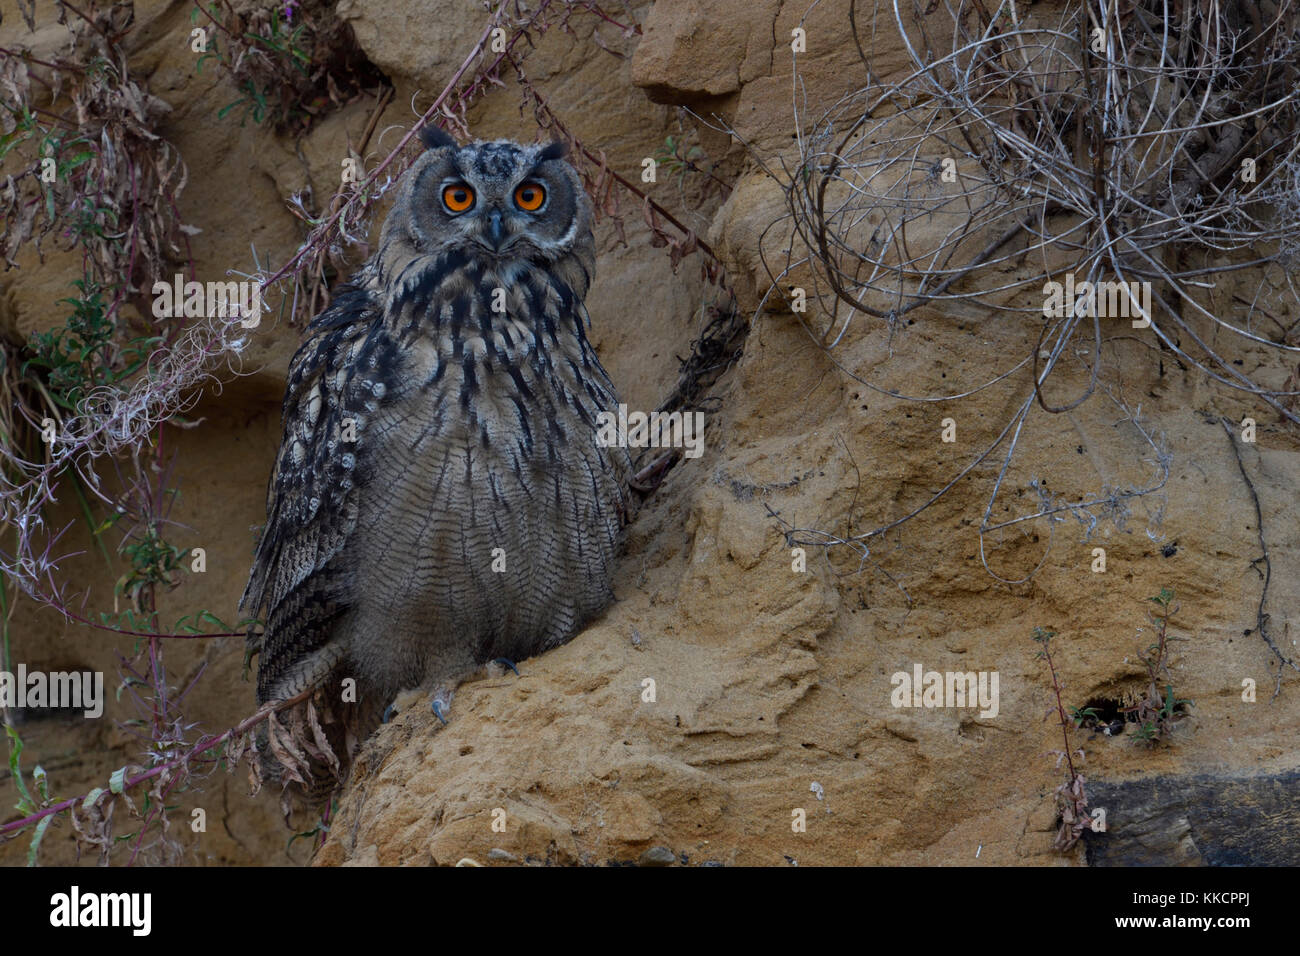 Grand owl Bubo bubo uhu ( / ), jeune oiseau, assis dans la pente d'une carrière de sable, regardant directement, habitat typique, de la faune, de l'Europe. Banque D'Images